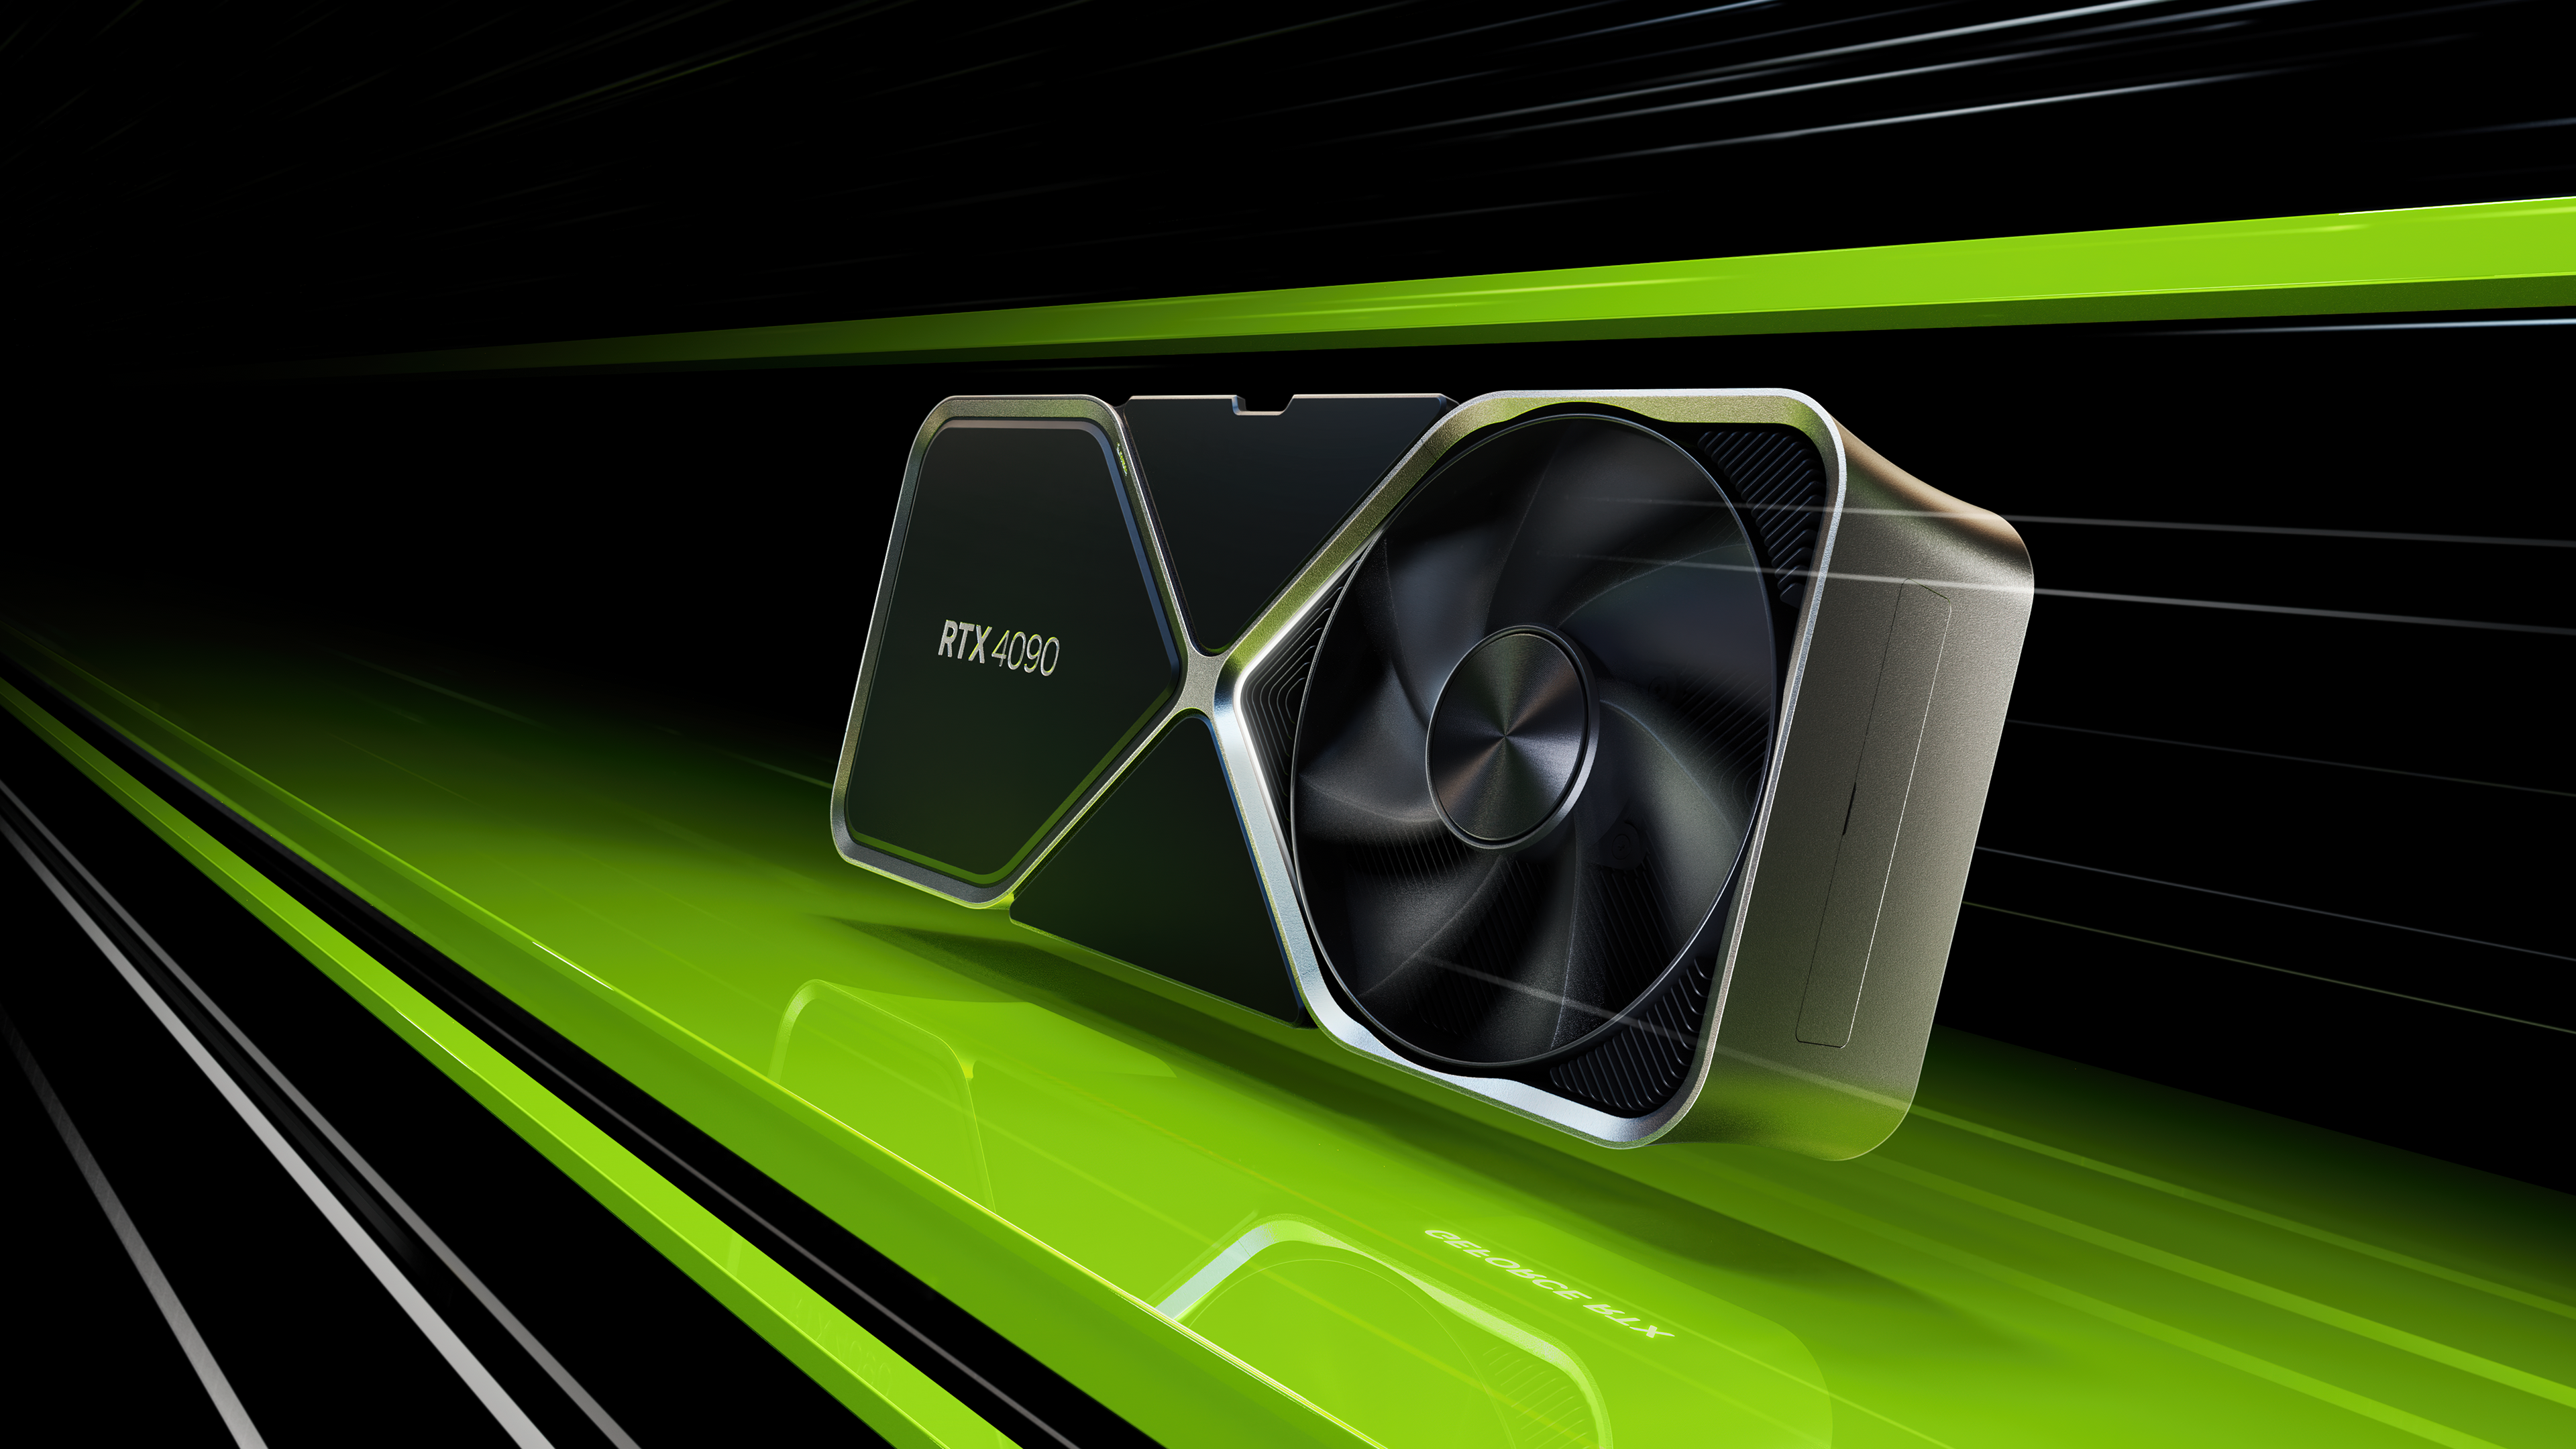 Immagine di Nvidia GeForce RTX 4090: un nuovo livello nelle performance delle schede grafiche